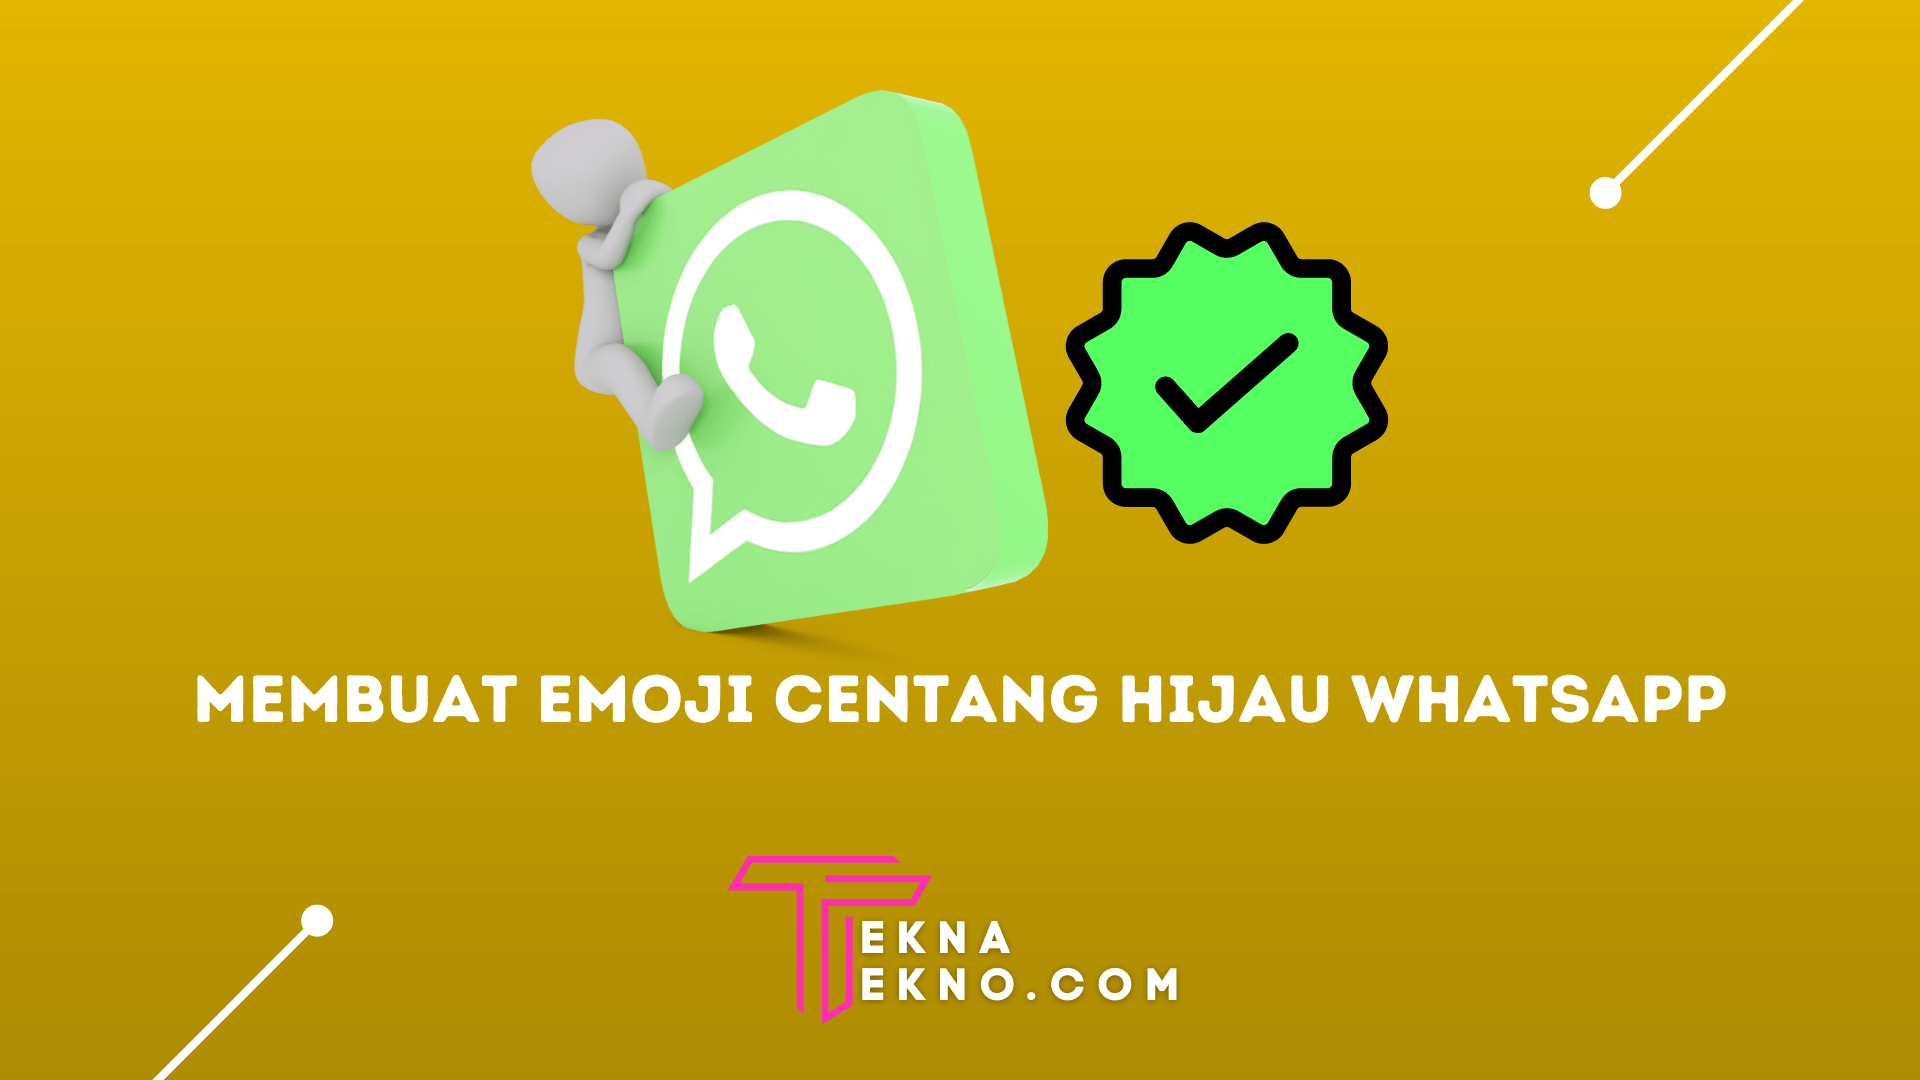 2 Cara Membuat Emoji Centang Hijau Whatsapp di Android dan iOS dengan Mudah